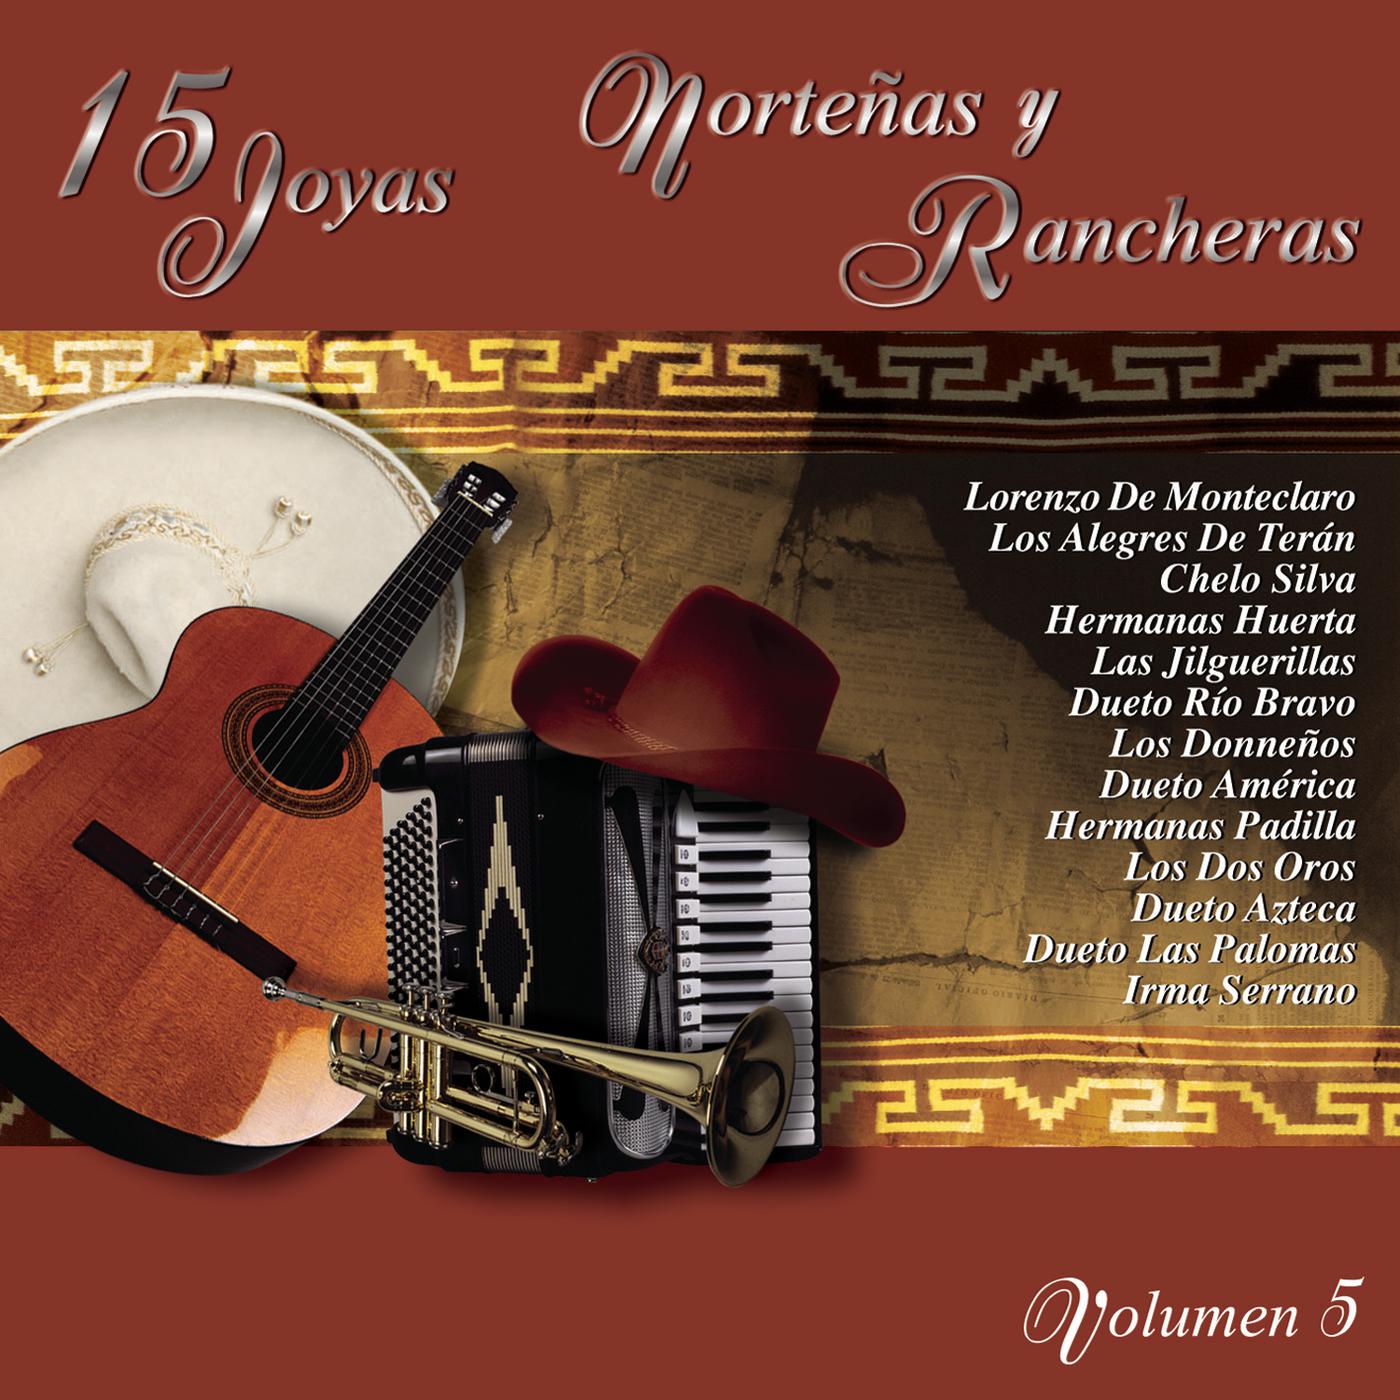 15 Joyas Norte as y Rancheras, Vol. 5